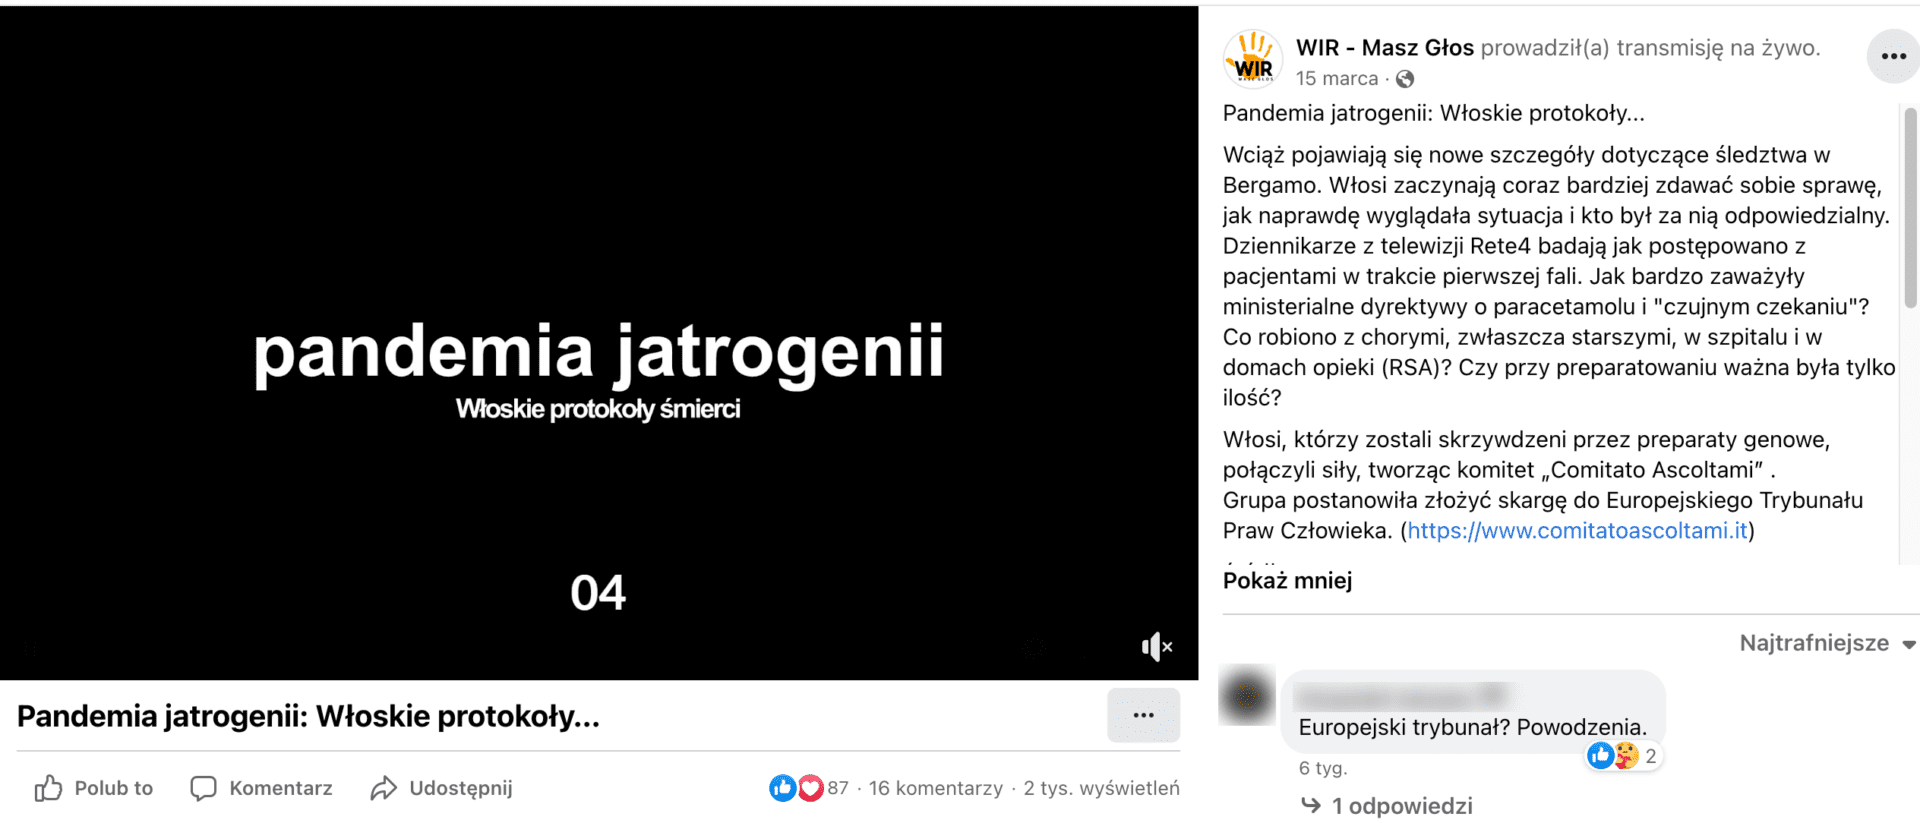 Zrzut ekranu omawianego posta udostępniającego film. W kadrze, na czarnym tle, napisano białymi literami: „pandemia jatrogenii, Włoskie protokoły śmierci”.